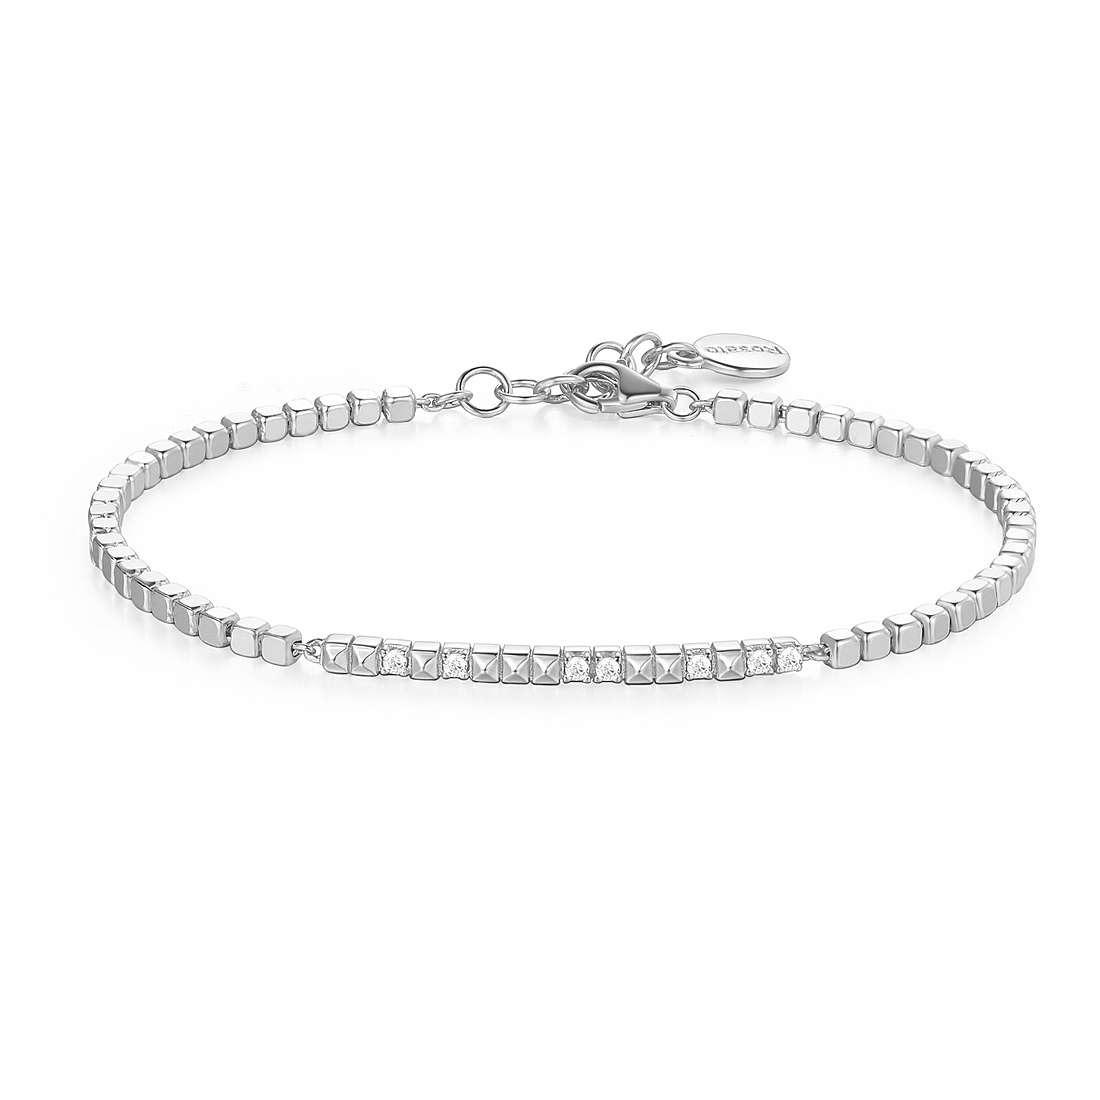 bracelet jewel 925 Silver woman jewel Zircons RZB032